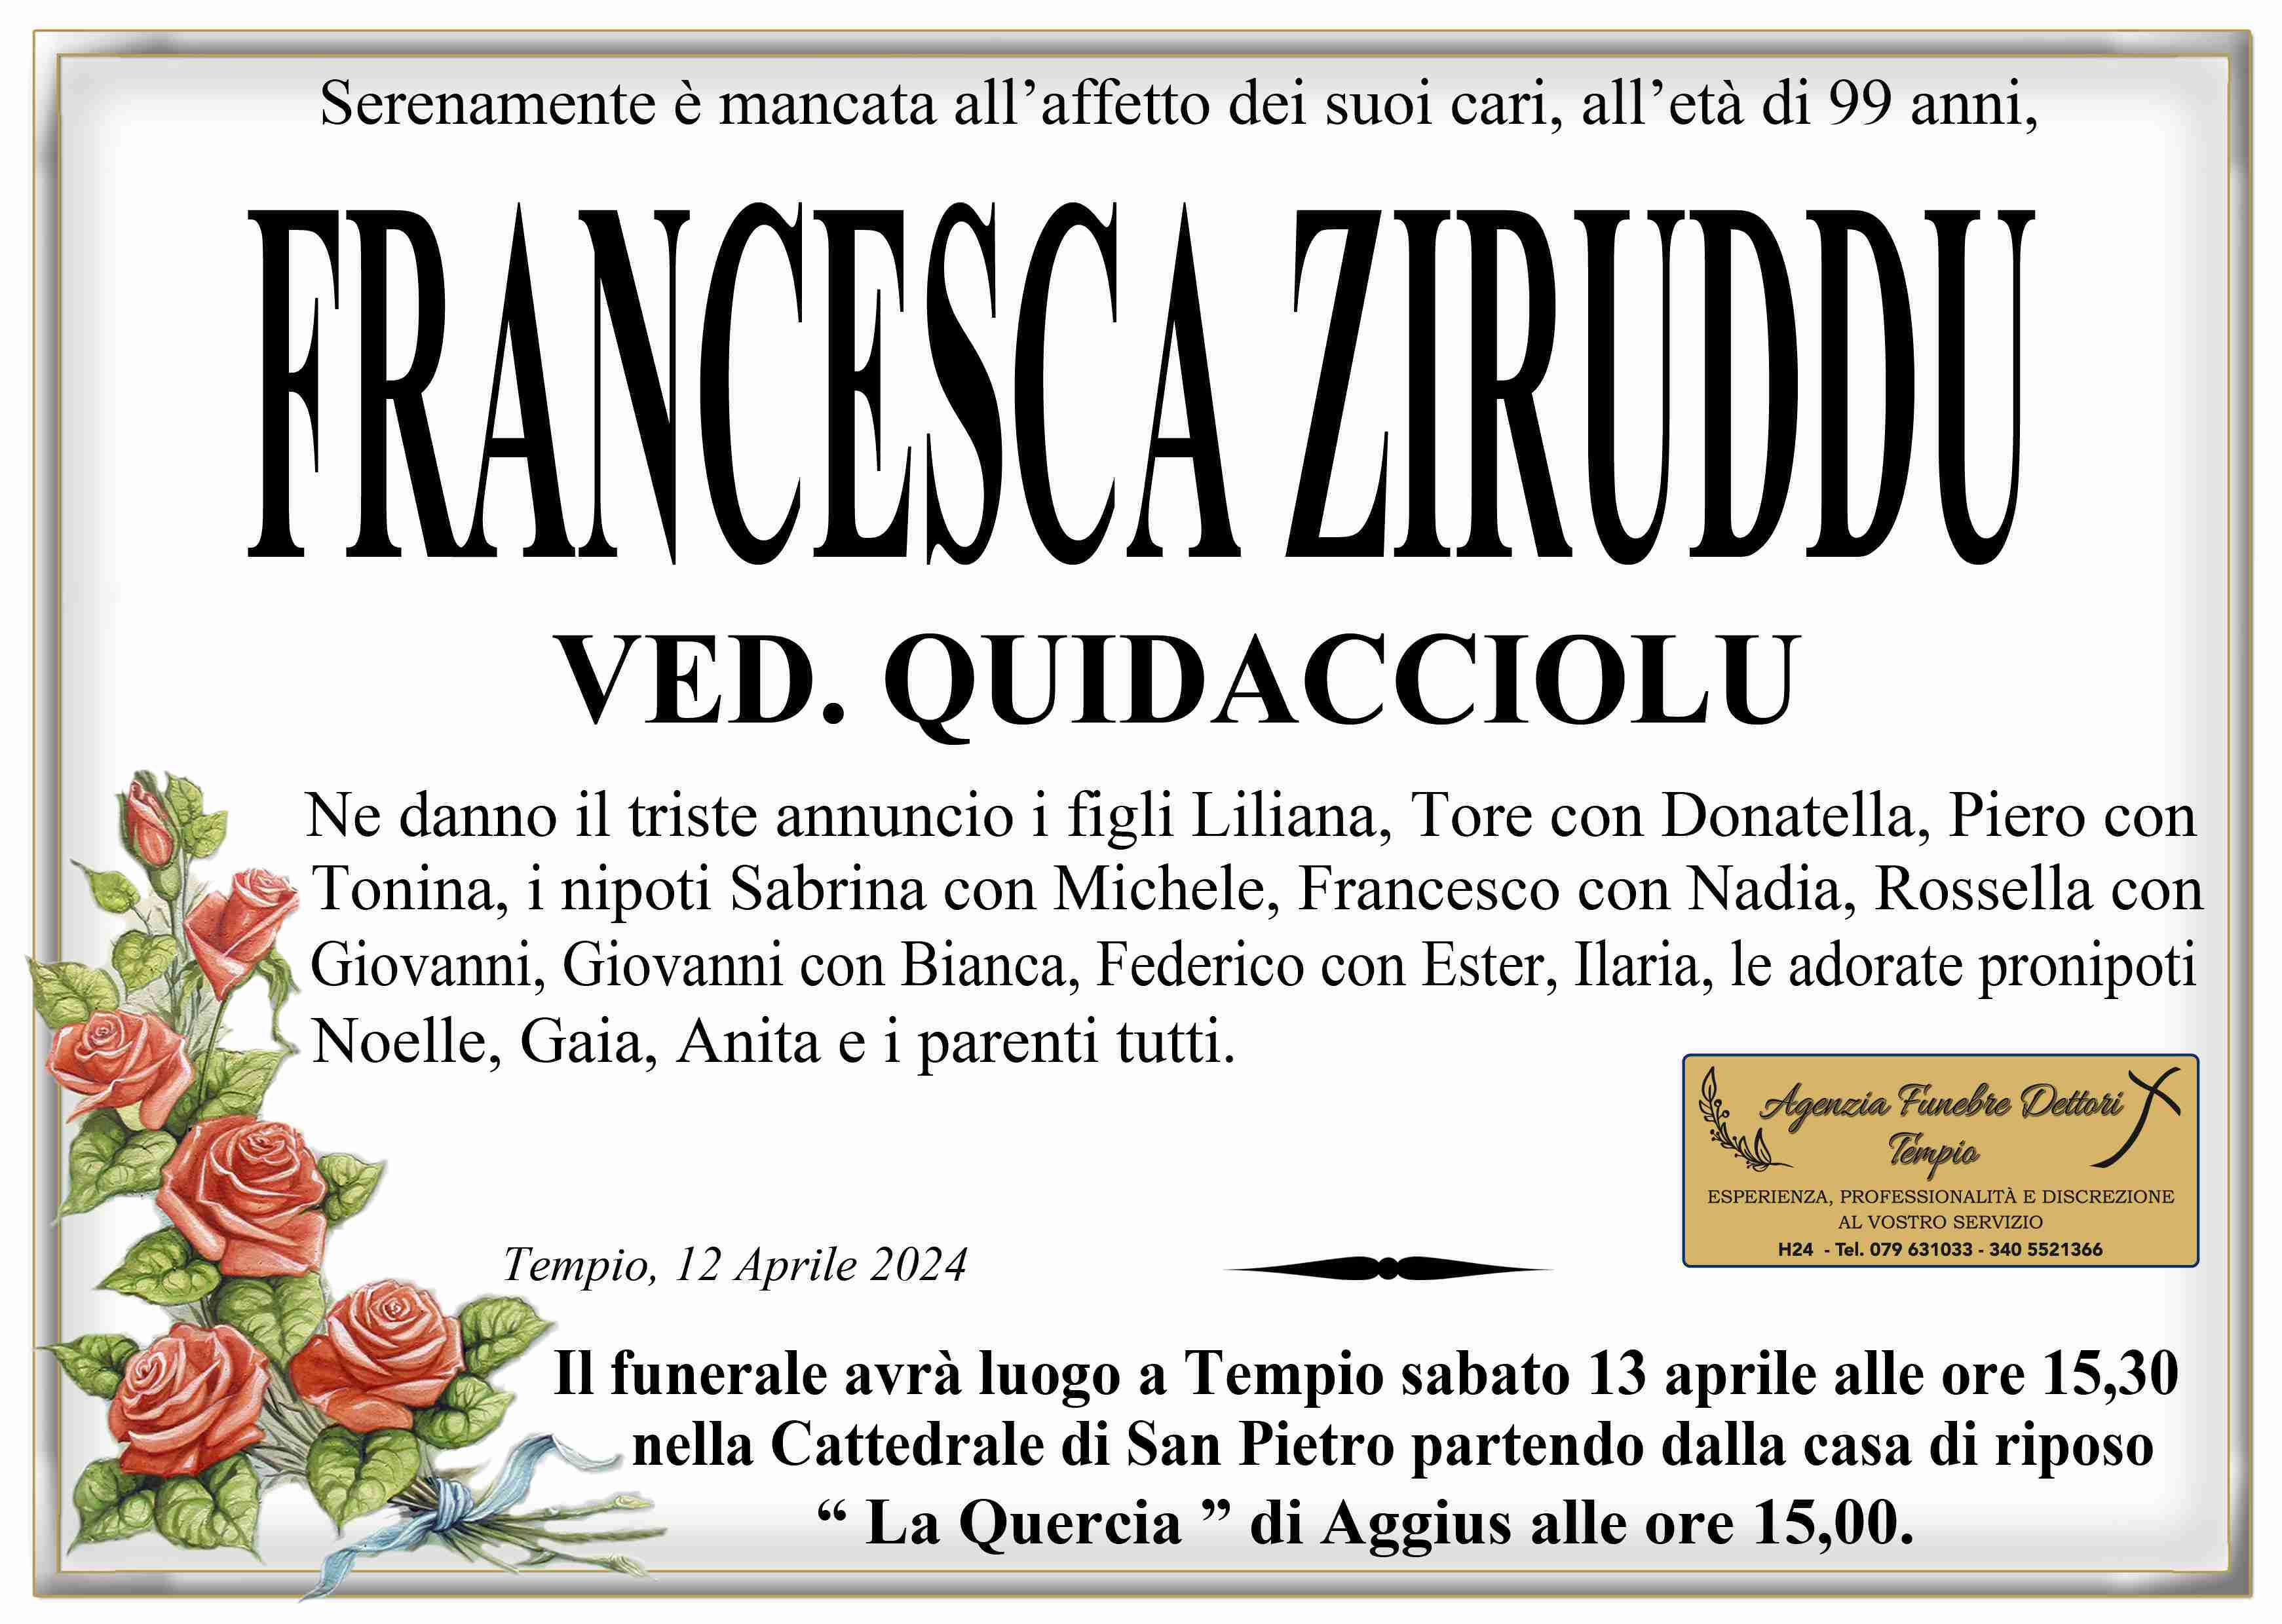 Francesca Ziruddu